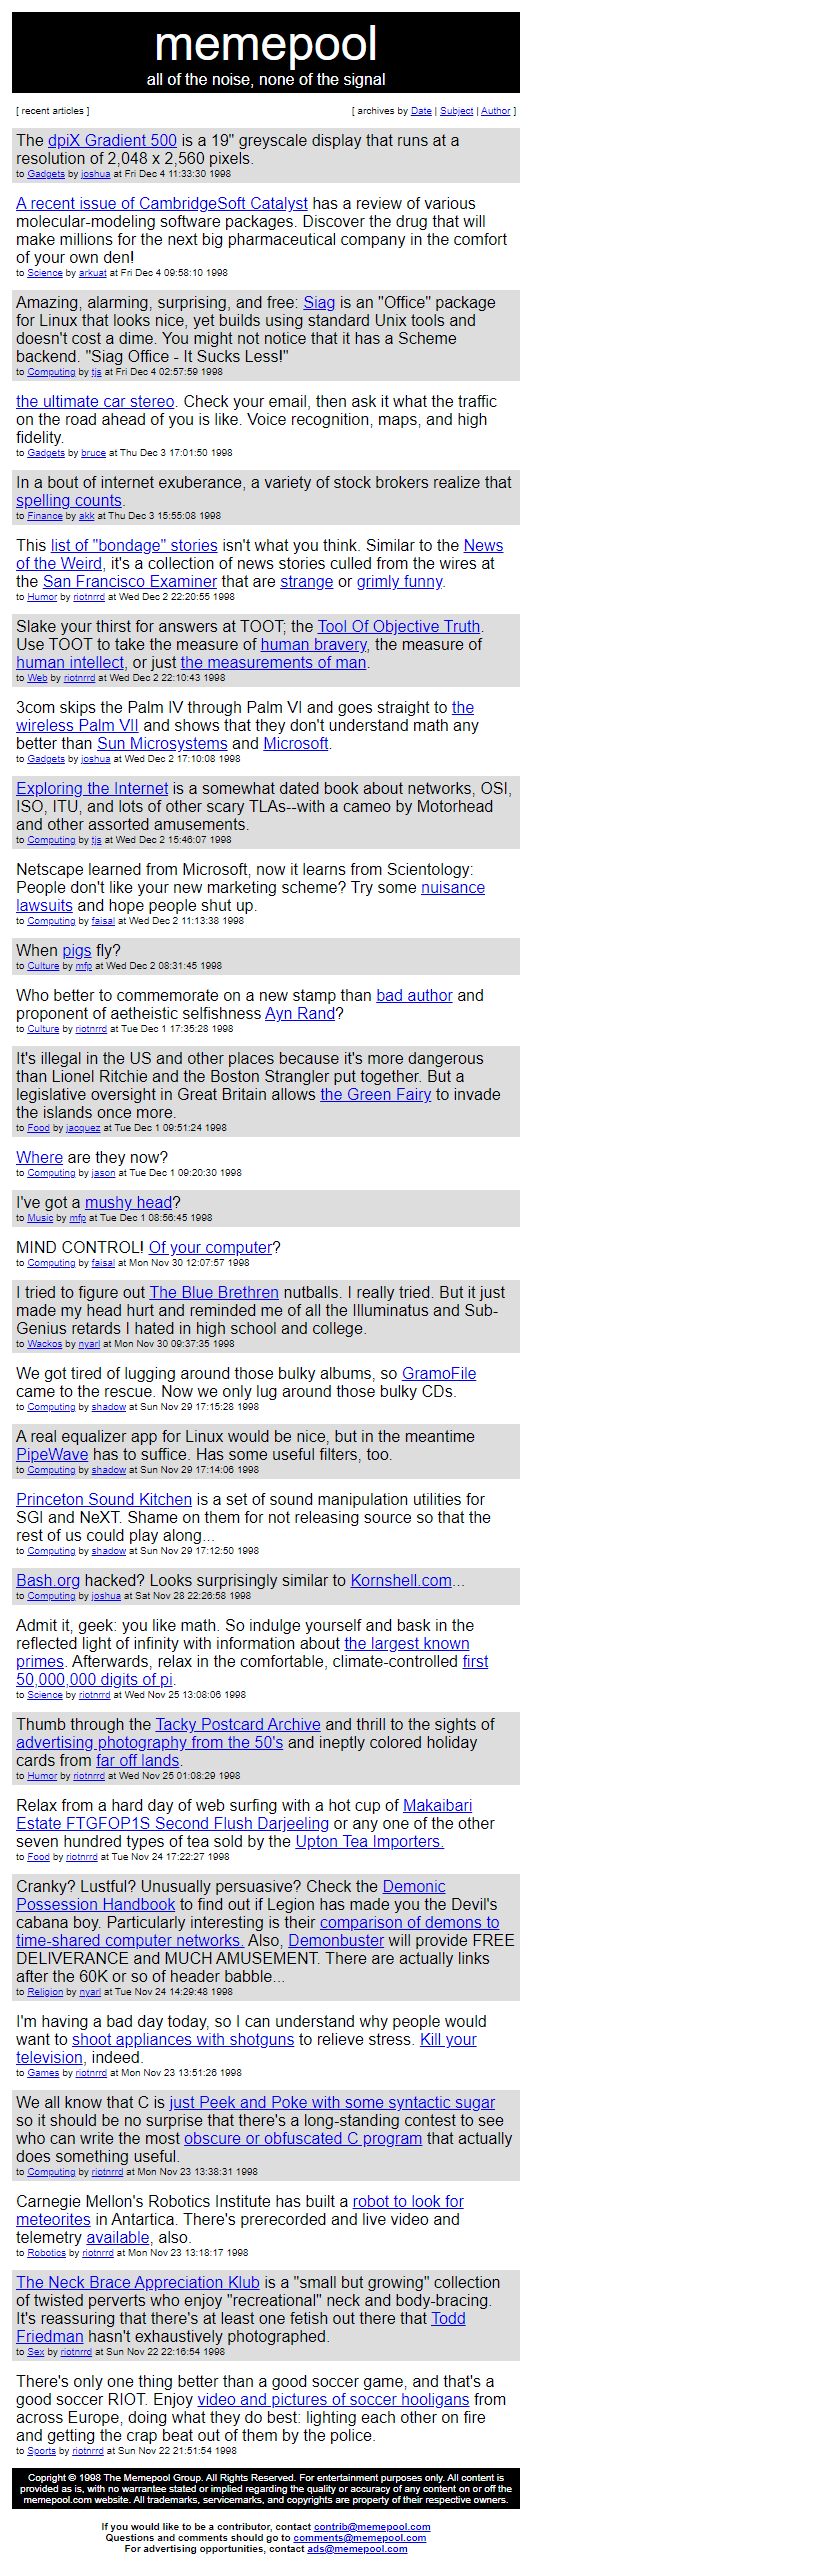 Memepool website in 1998